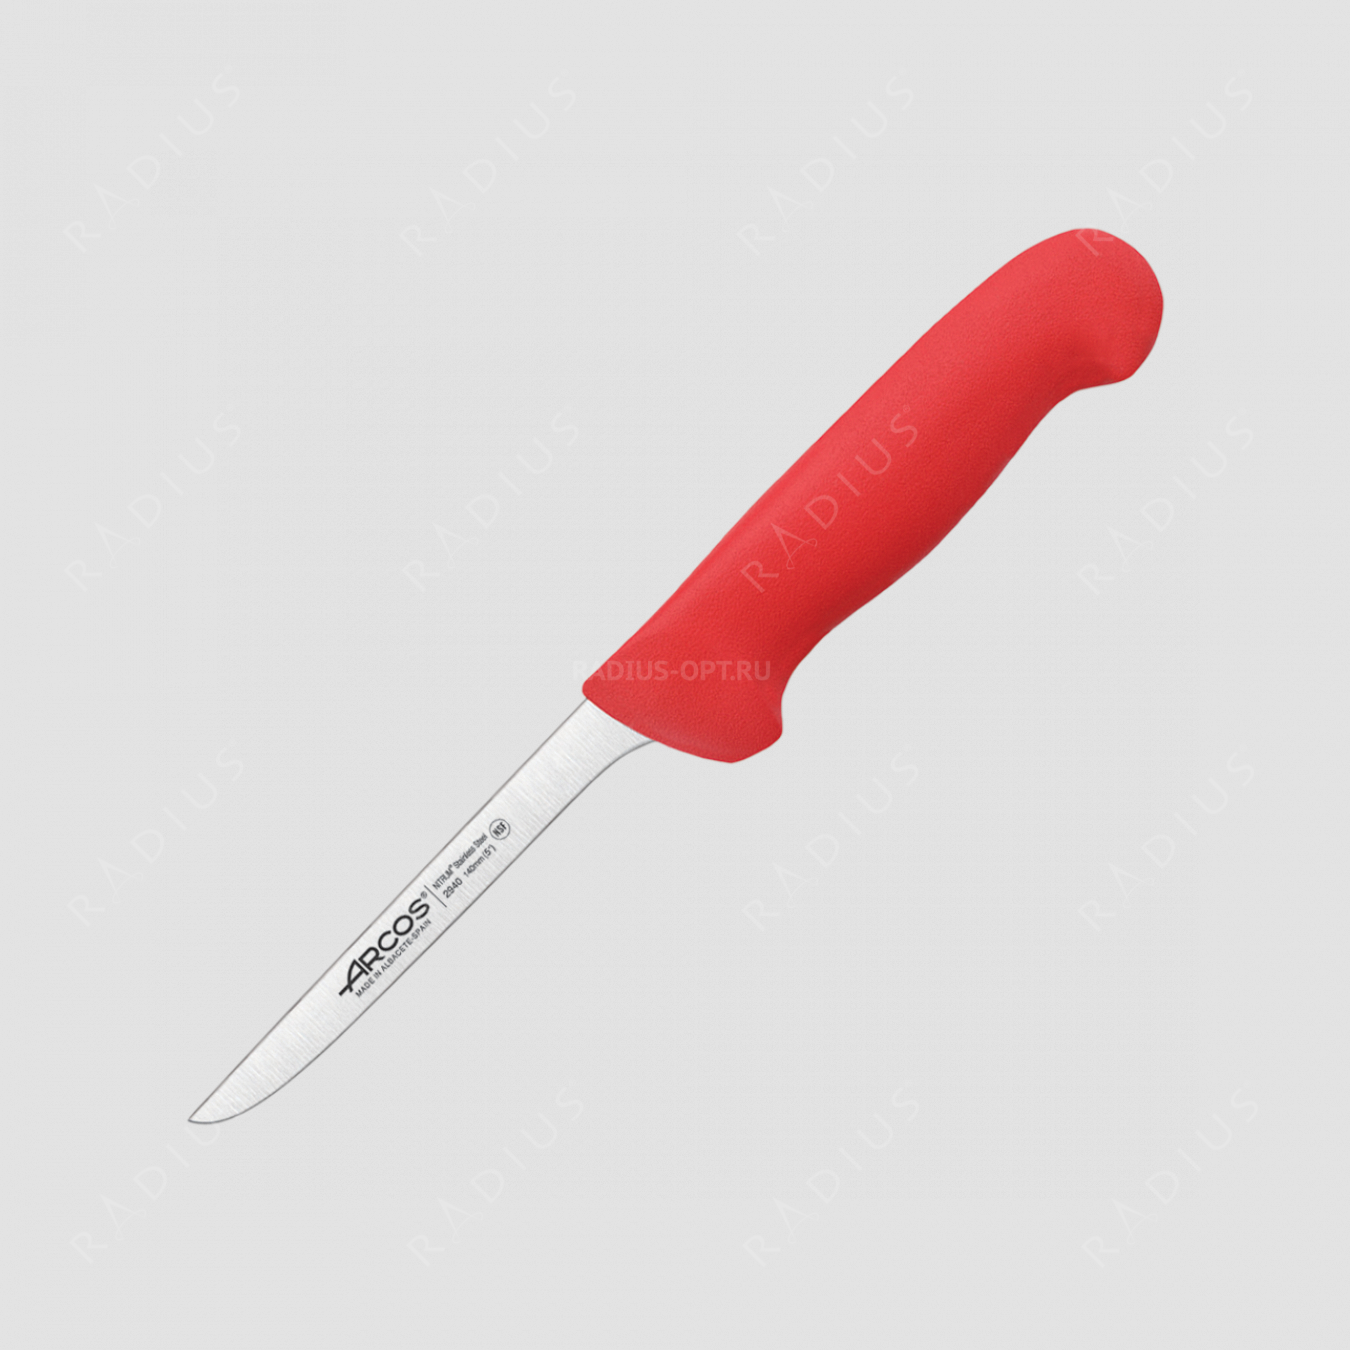 Нож кухонный обвалочный 14 см, рукоять красная, серия 2900, ARCOS, Испания